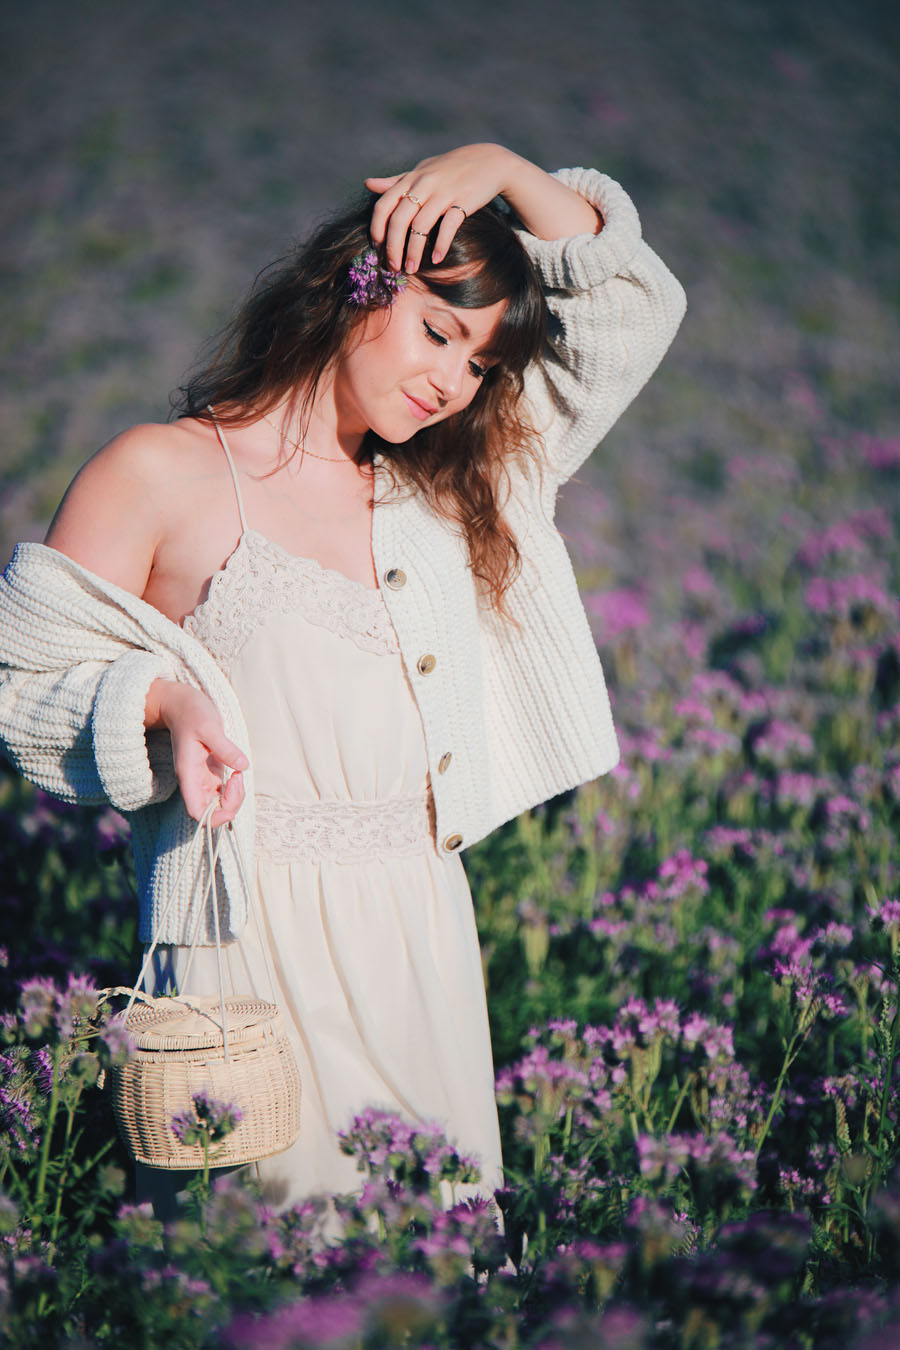 Romantischer Sommerlook mitten im Blumenmeer-Modeblog-Style by An